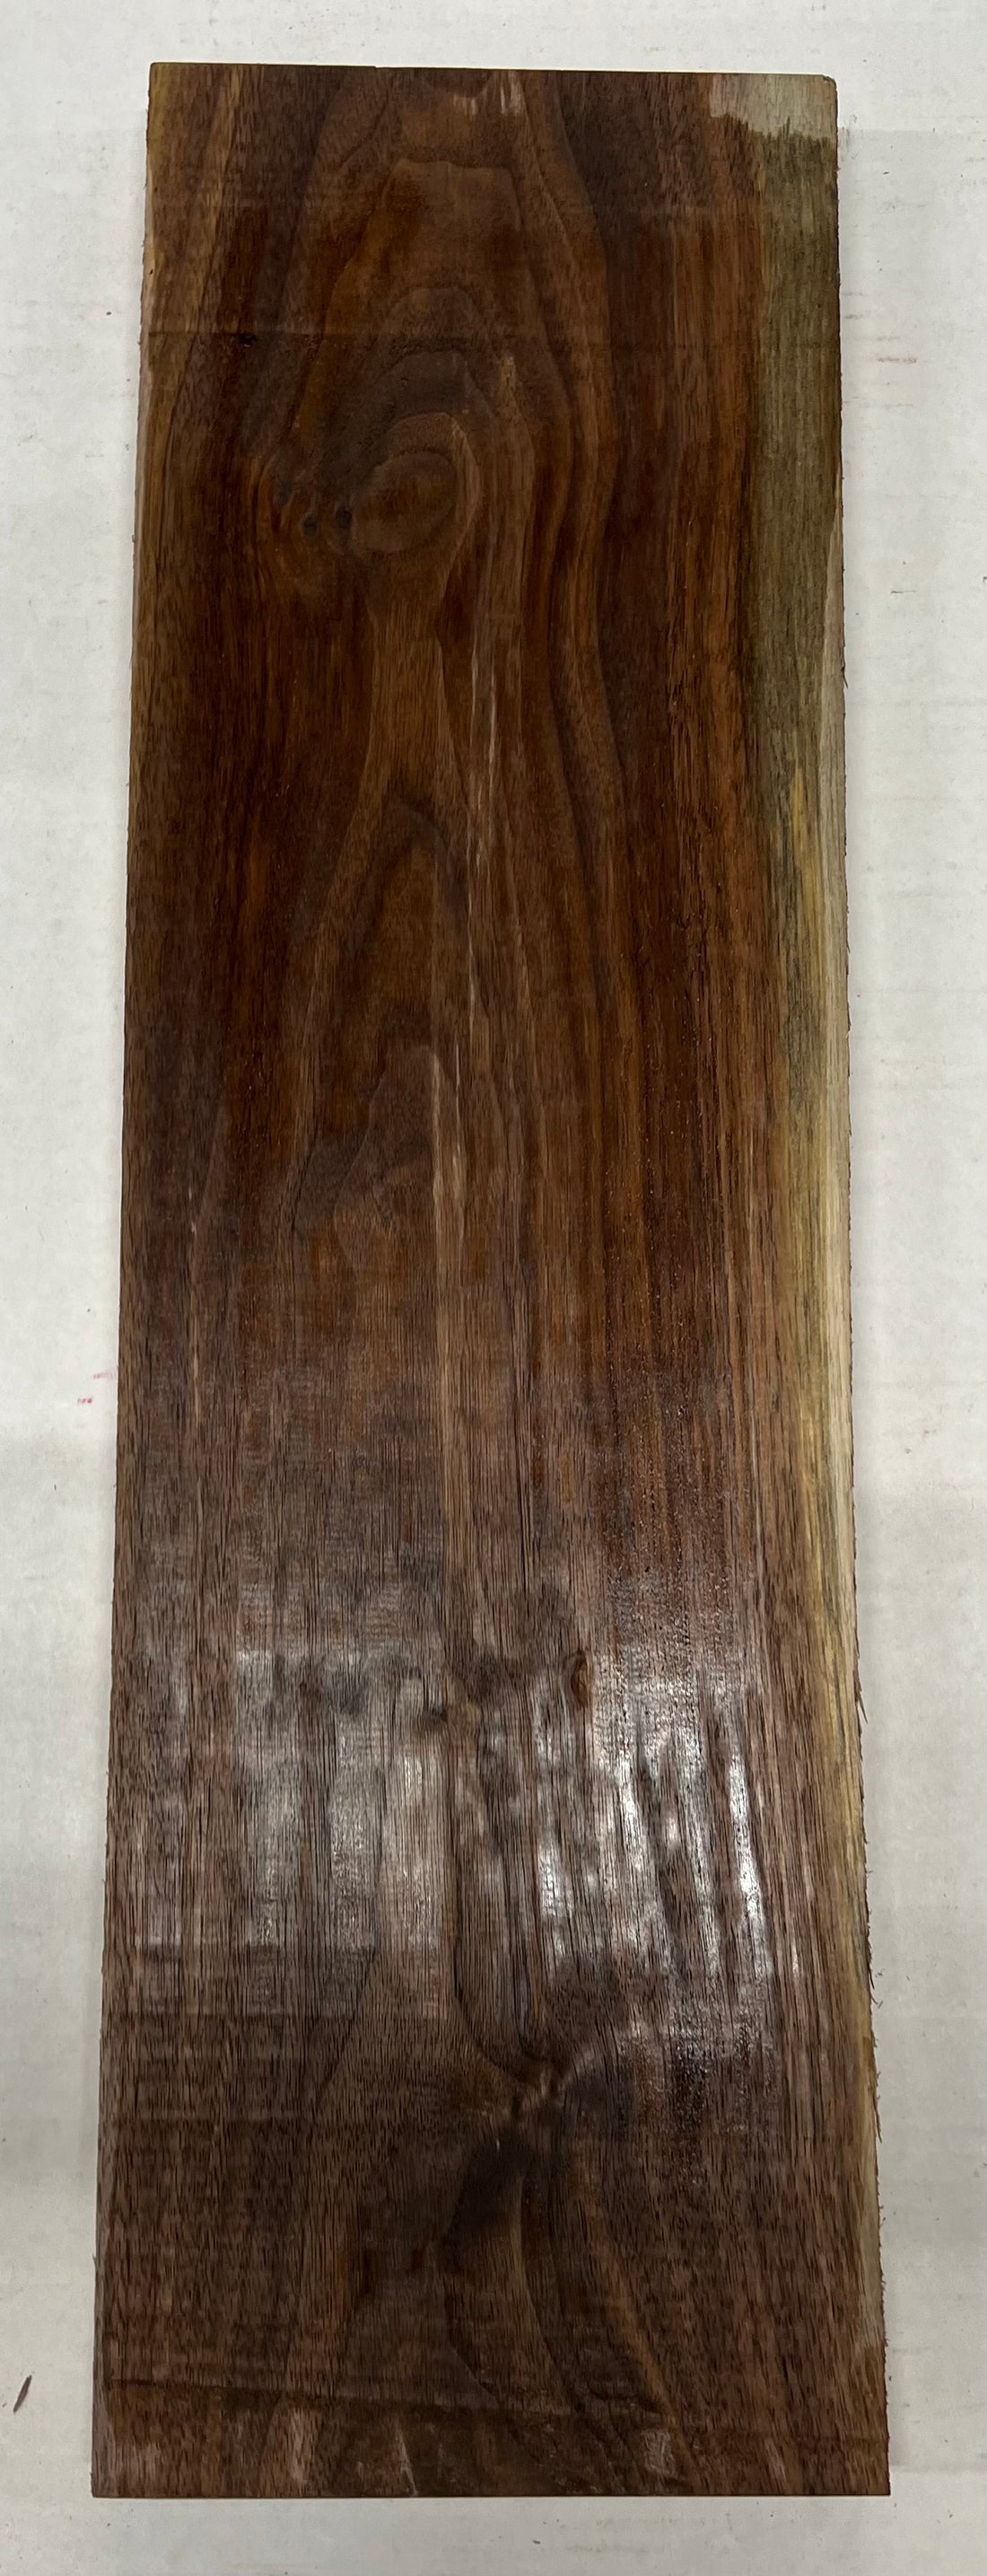 Black Walnut Thin Stock Three Dimensional Lumber Board 24&quot;x7&quot;x7/8&quot;  